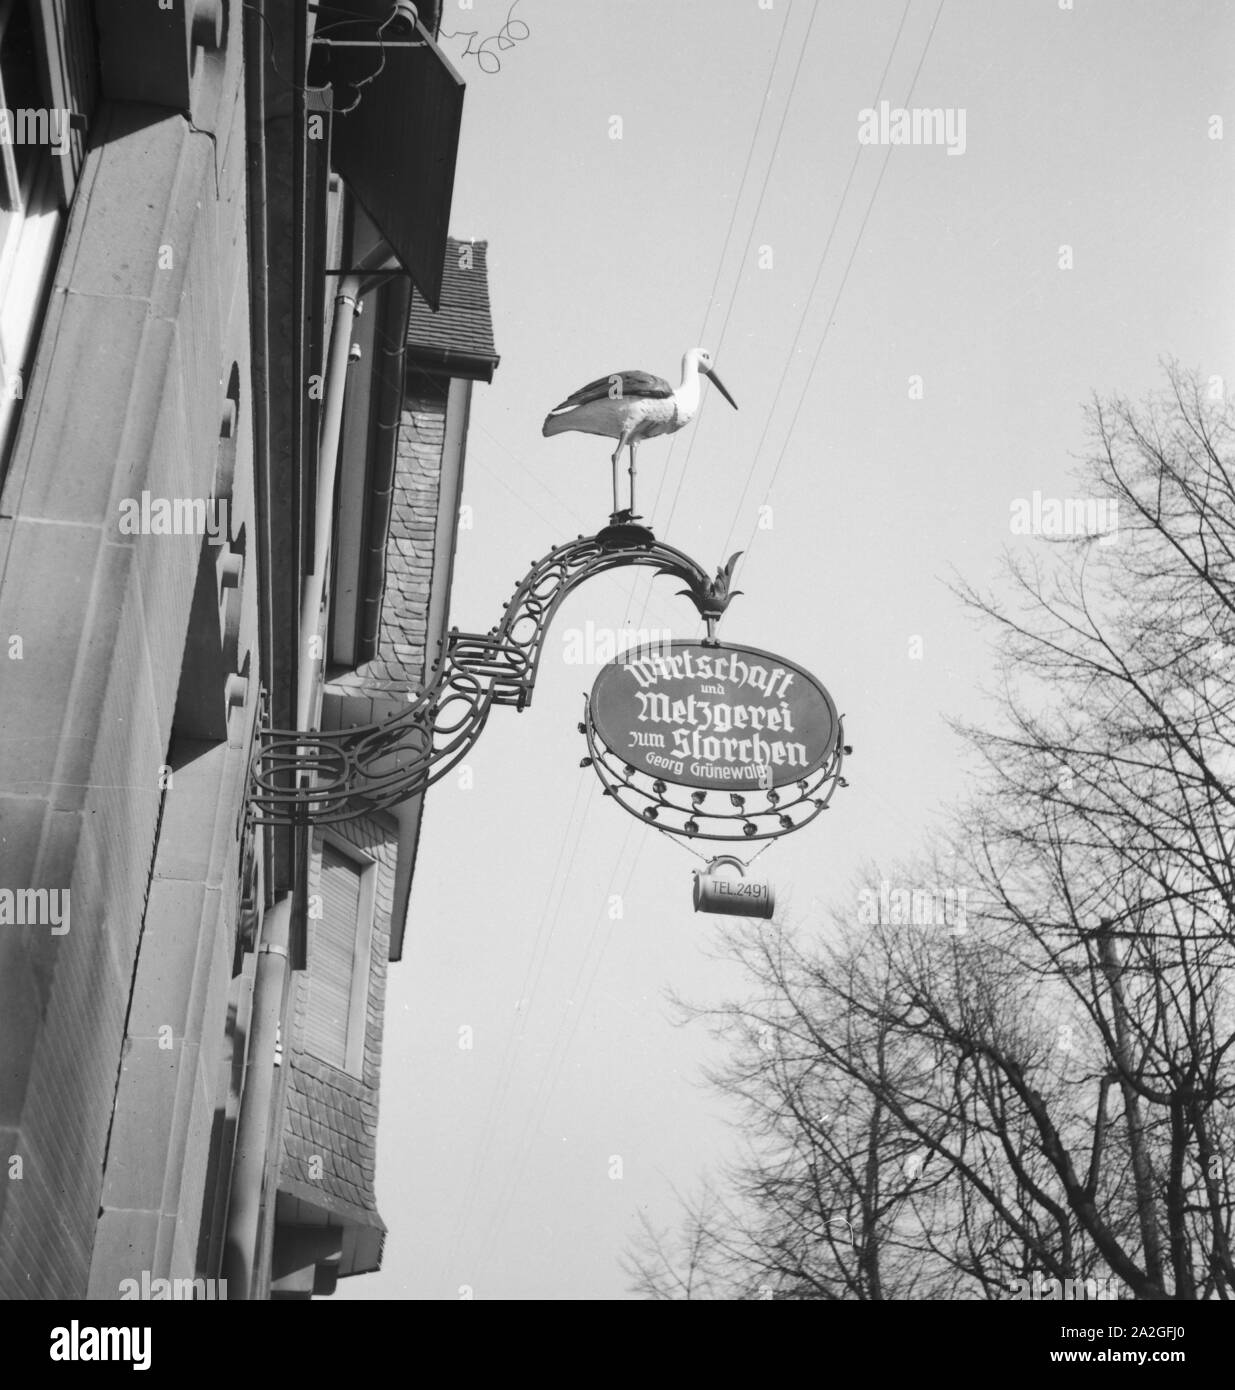 Metzgerei und Wirtschaft zum Storchen von Georg Grünwald in Frankfurt am Main, Deutschland 1930er Jahre. Georg Gruenwald's butcher shop and inn called 'Zum Storchen' at Frankfurt, Germany 1930s. Stock Photo